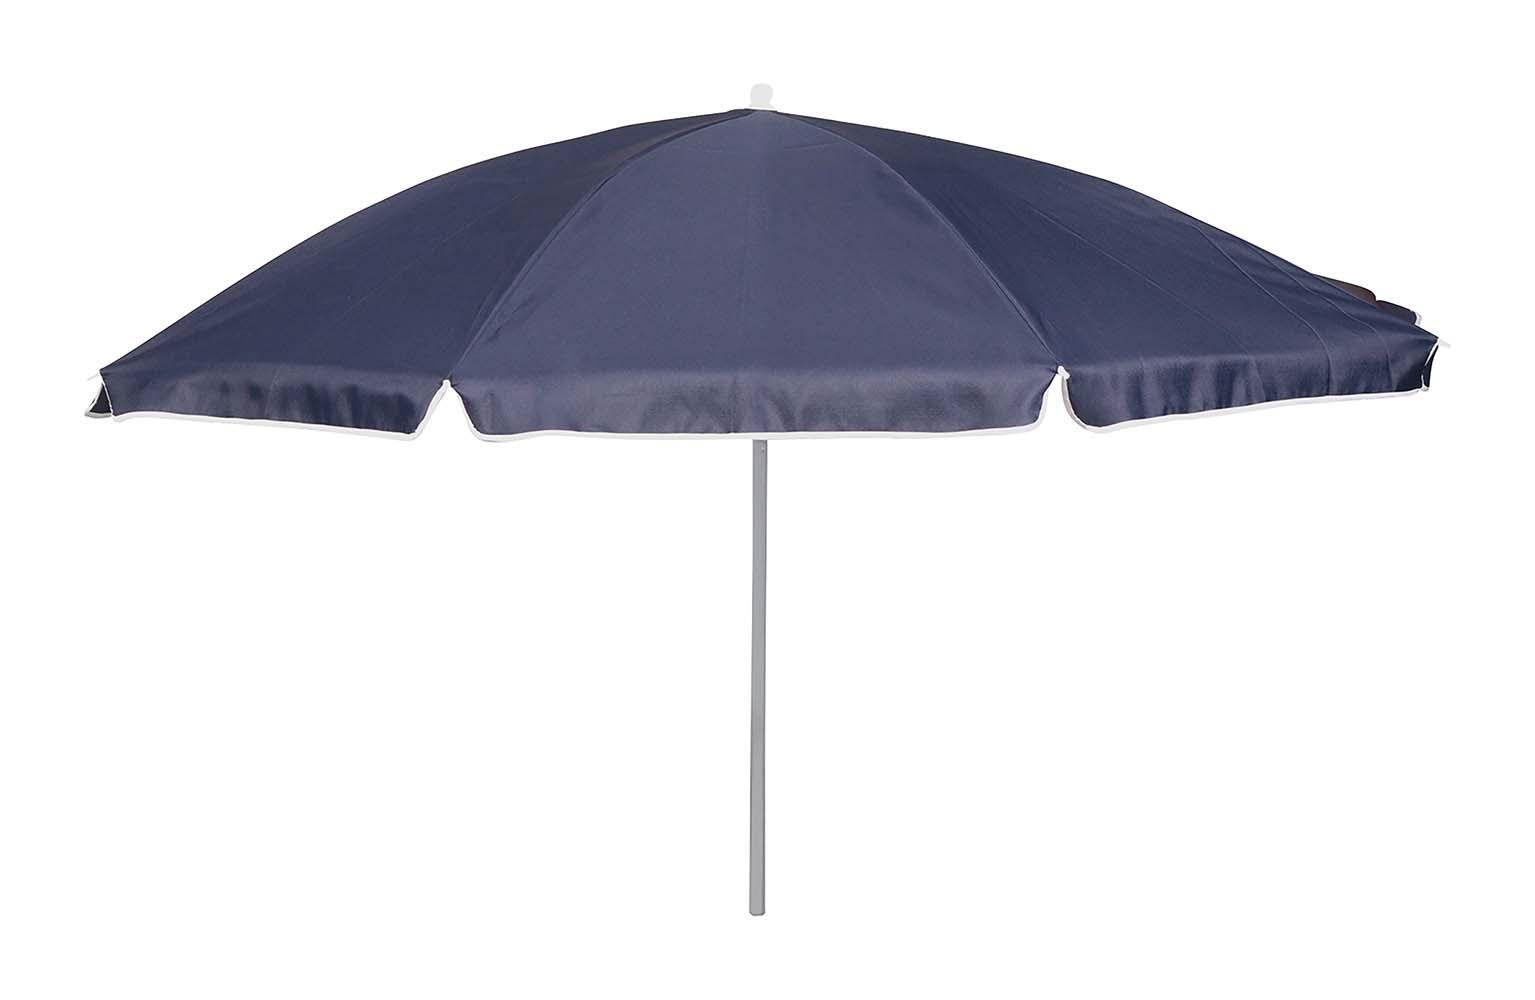 7267248 Een stevige parasol met stalen frame. Het 160 gr/m² polyester doek met UV-filter biedt bescherming tegen schadelijke zonnestraling. De steel is in hoogte verstelbaar en voorzien van een knikarm zodat het doek richting de zon kan worden gebogen. De steel van de parasol heeft een diameter van 25 millimeter.